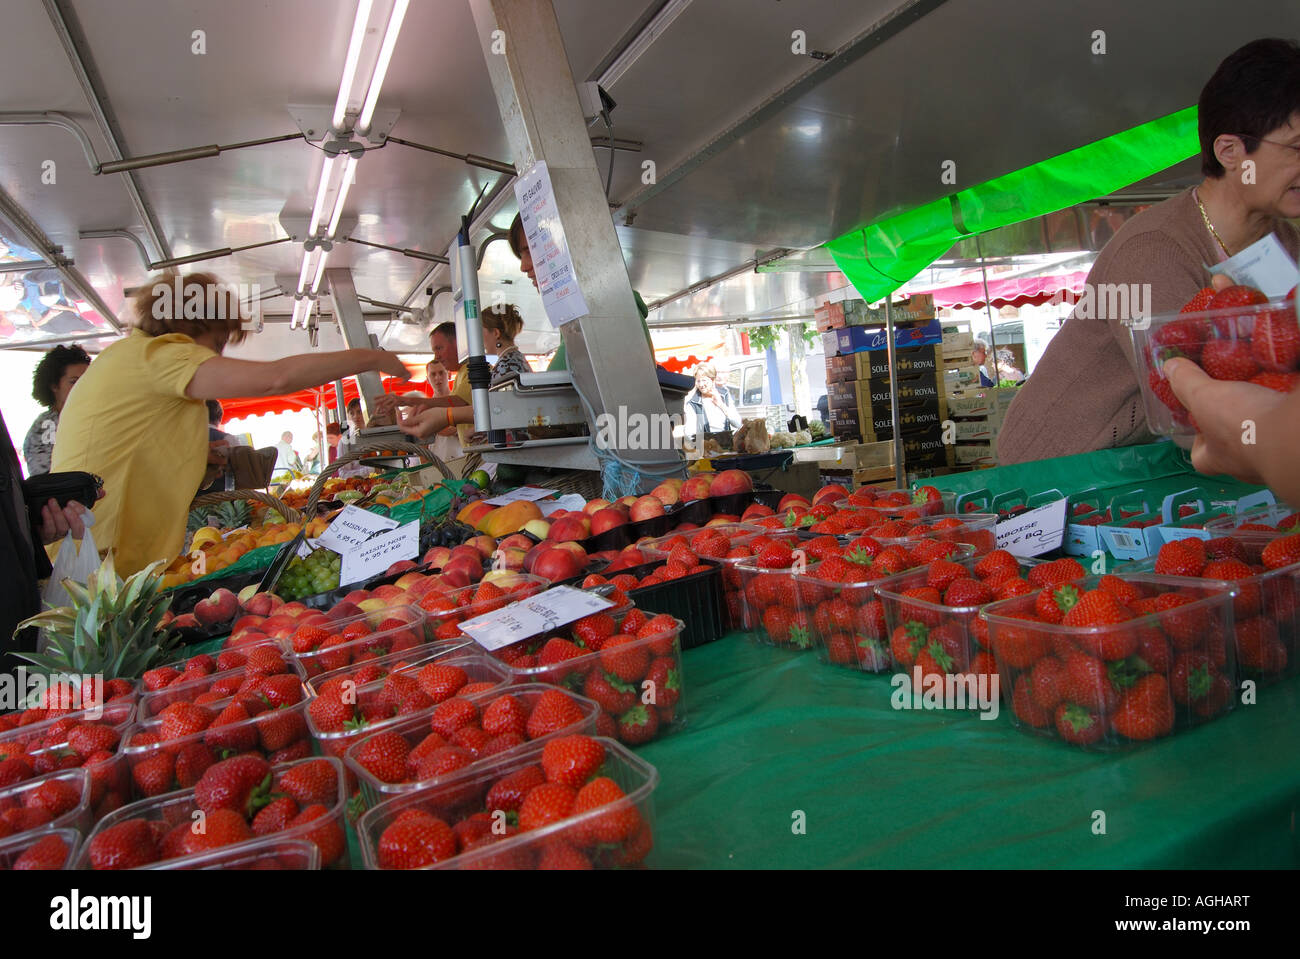 Étal de fruits de fraises de pêches et de raisins à St Gilles Croix de vie vendee france 2532 Numéro du marché Banque D'Images